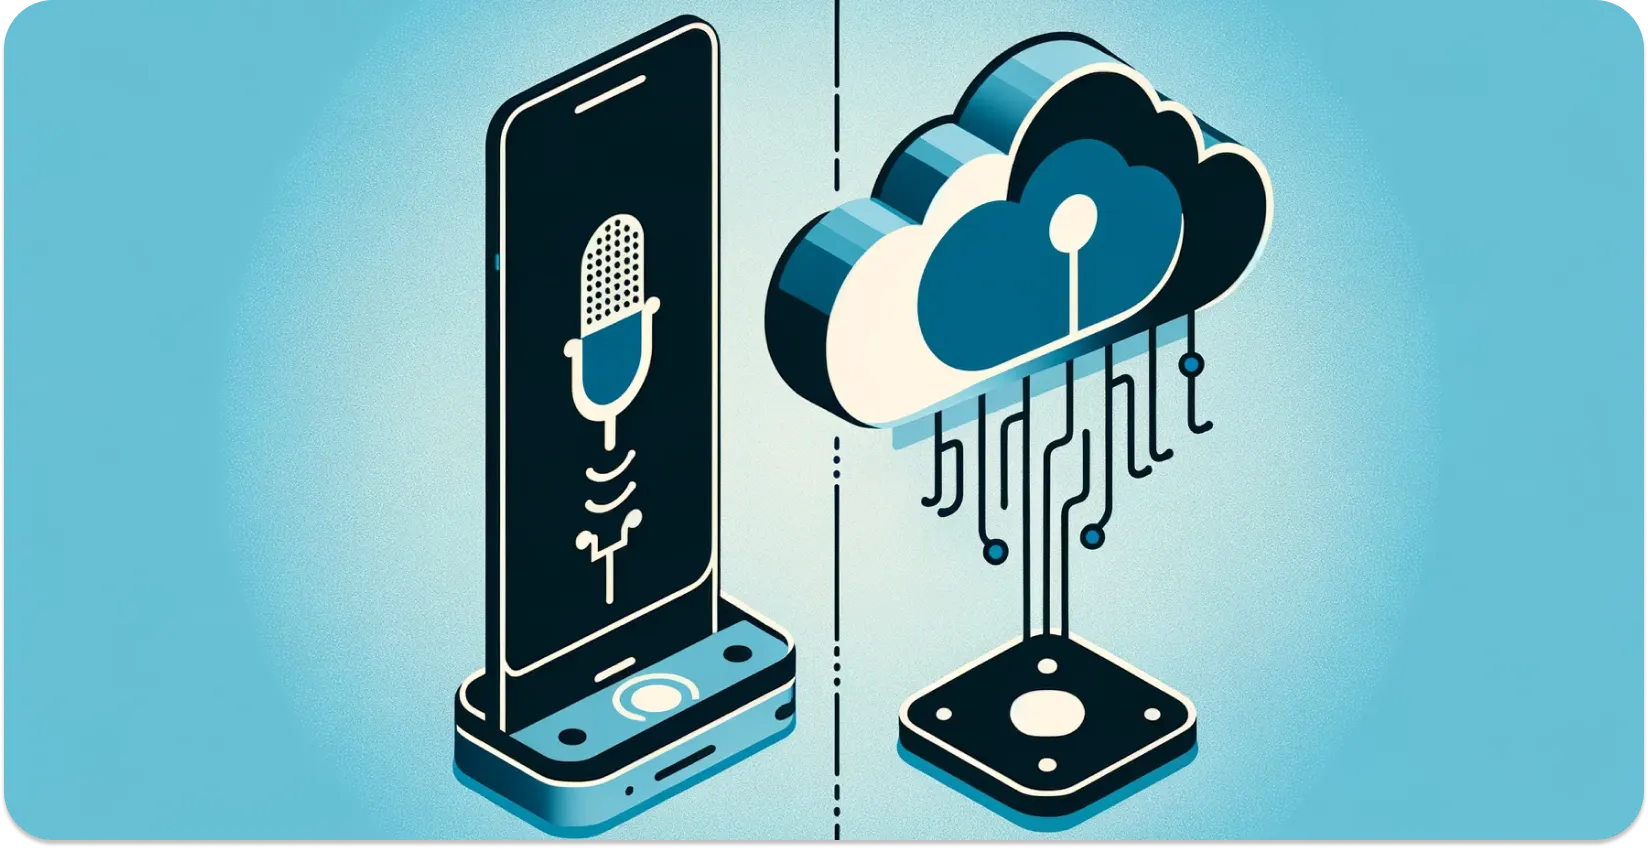 Tipo de reconocimiento de voz integrado y basado en la nube en el uso diario de la tecnología.